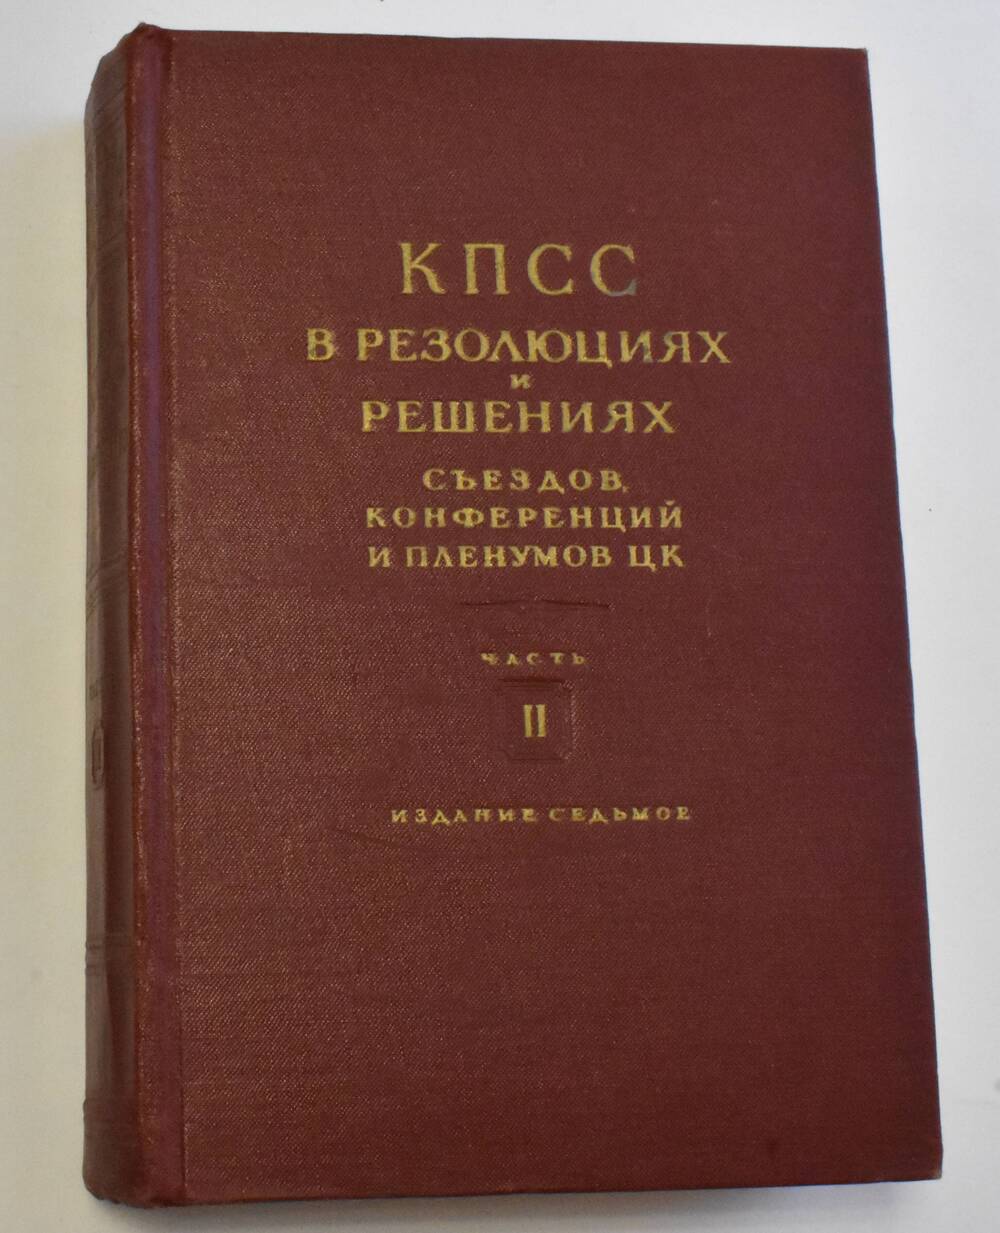 Книга Коммунистическая партия Советского Союз (1898-1954). Часть 2
Государственное издательство политической литературы Москва 1954